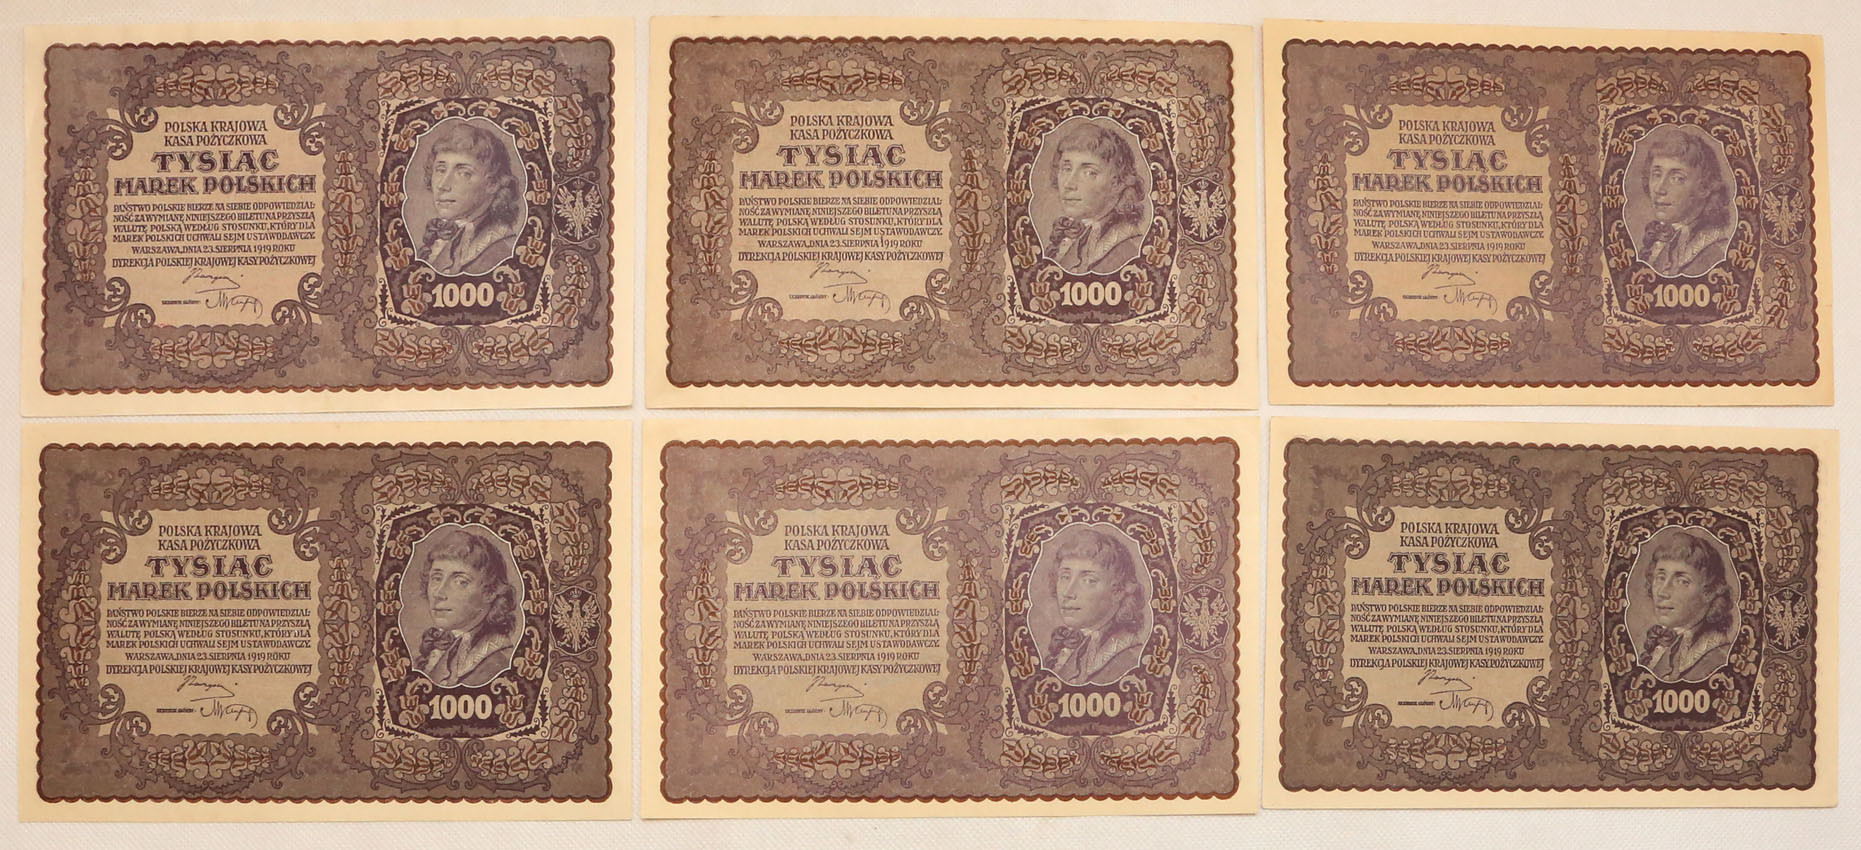 1.000 marek polskich, zestaw 6 banknotów